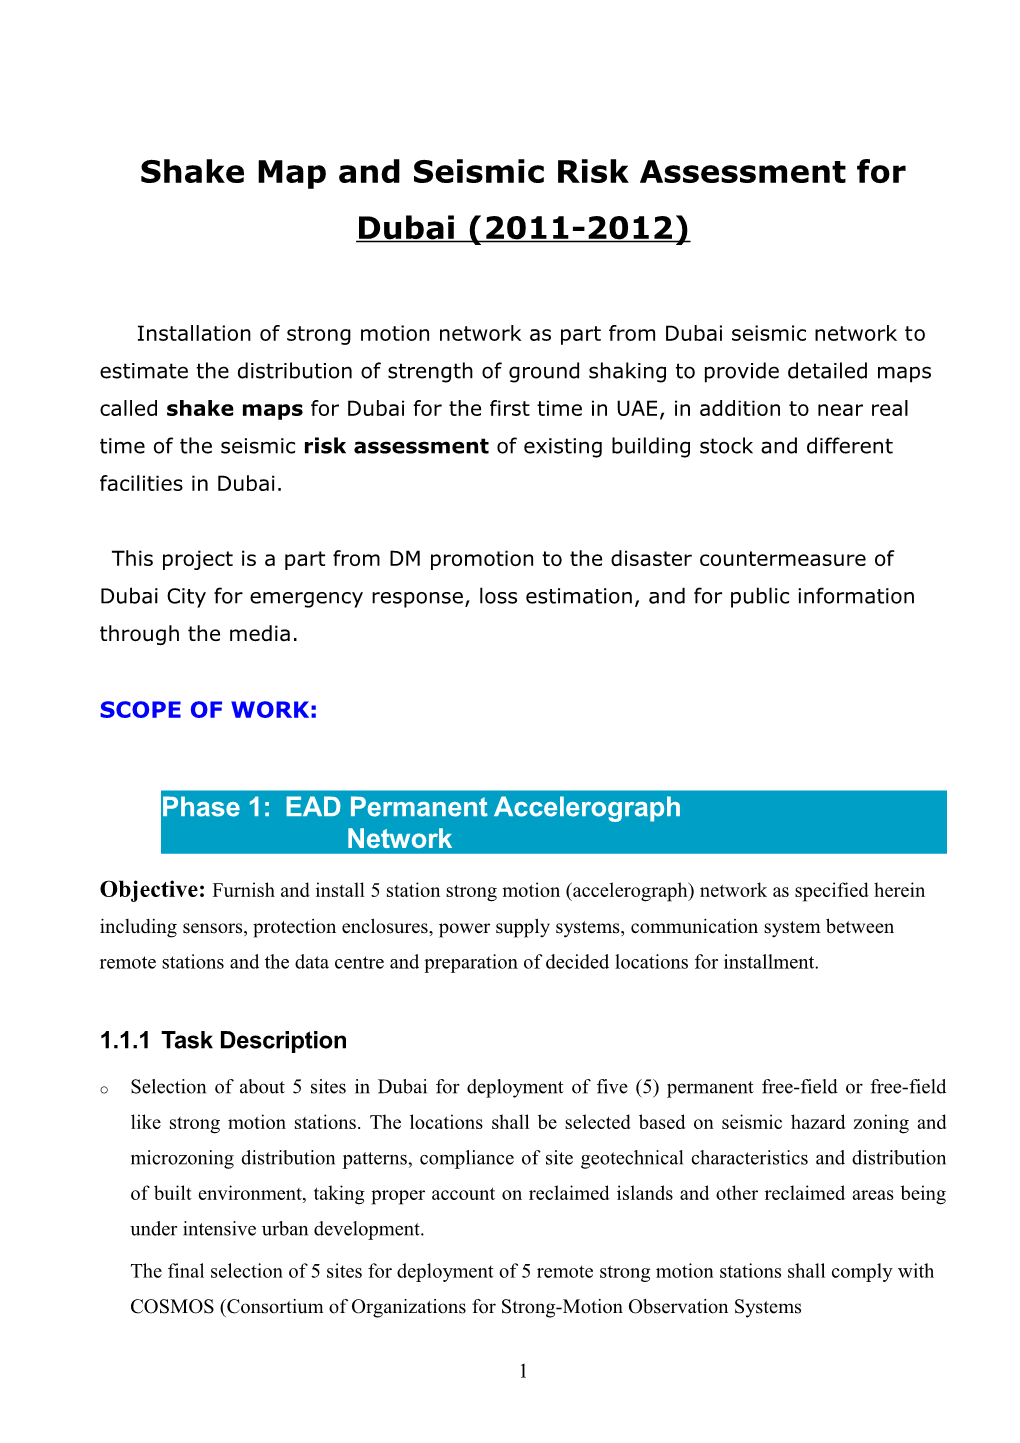 Shake Map and Seismic Risk Assessment for Dubai (2011-2012)